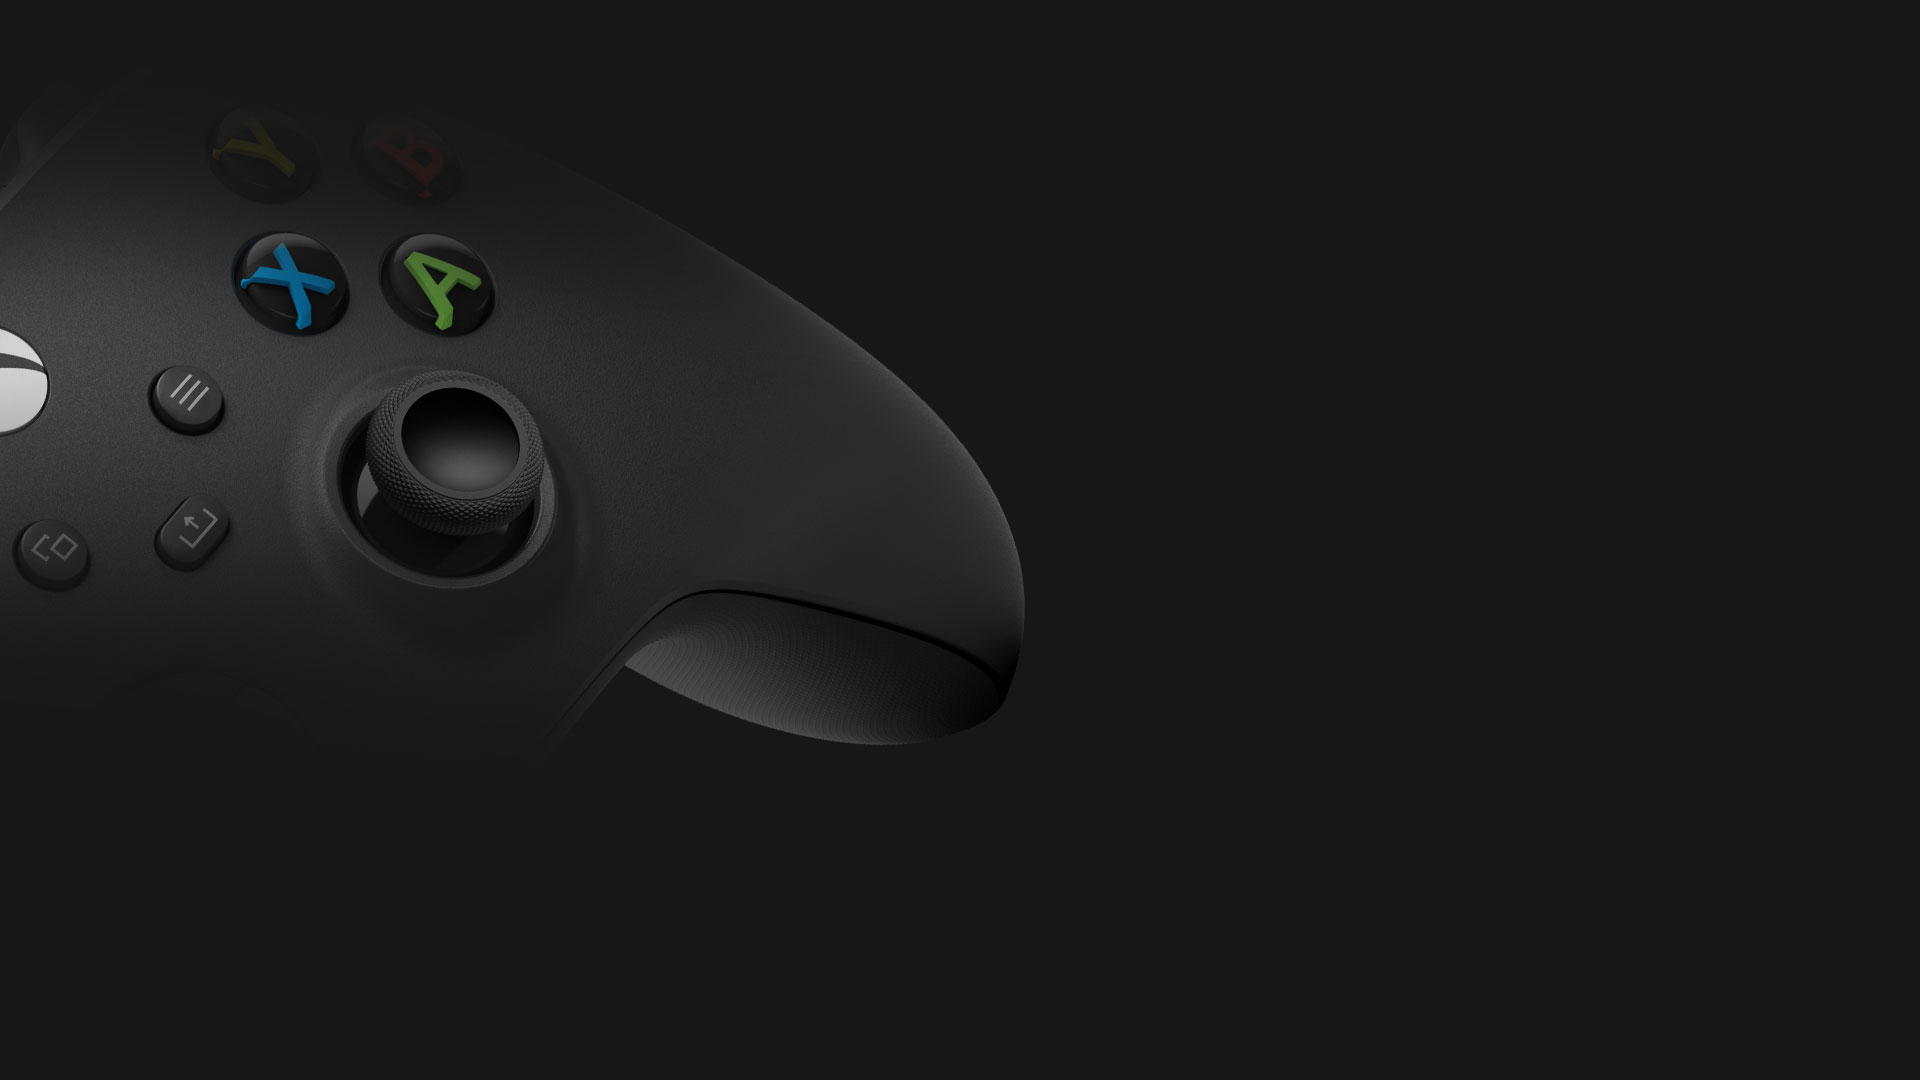 碳黑色 Xbox 無線控制器的側面角度畫面